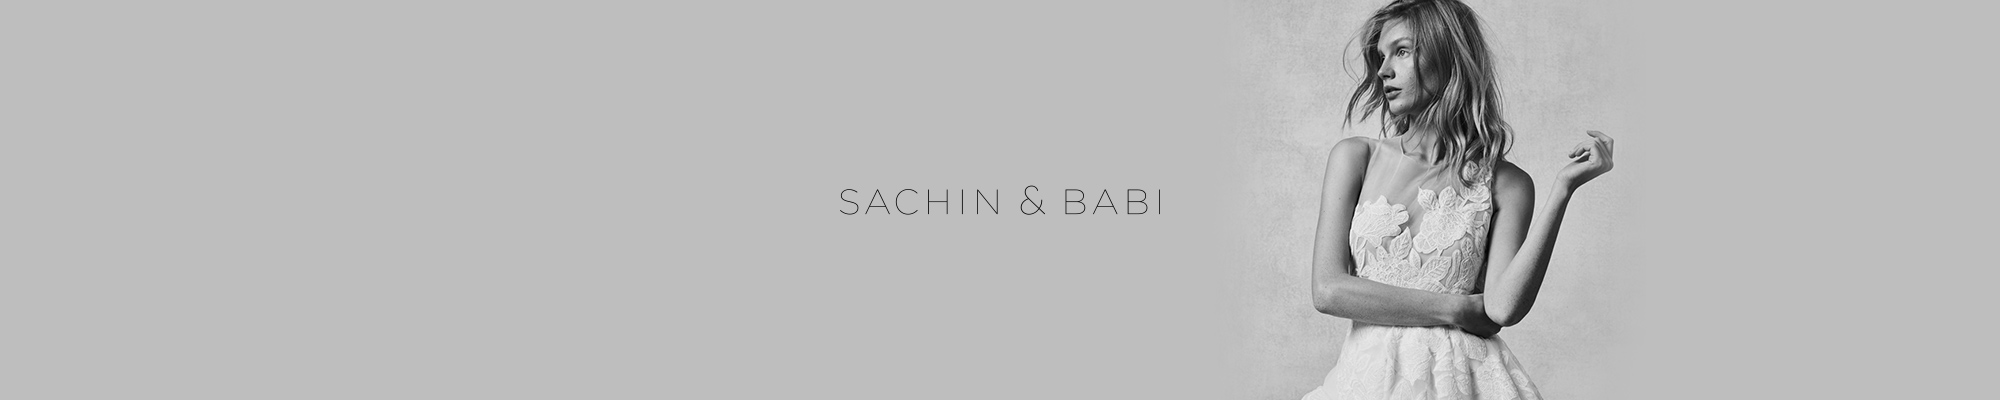 SACHIN & BABI